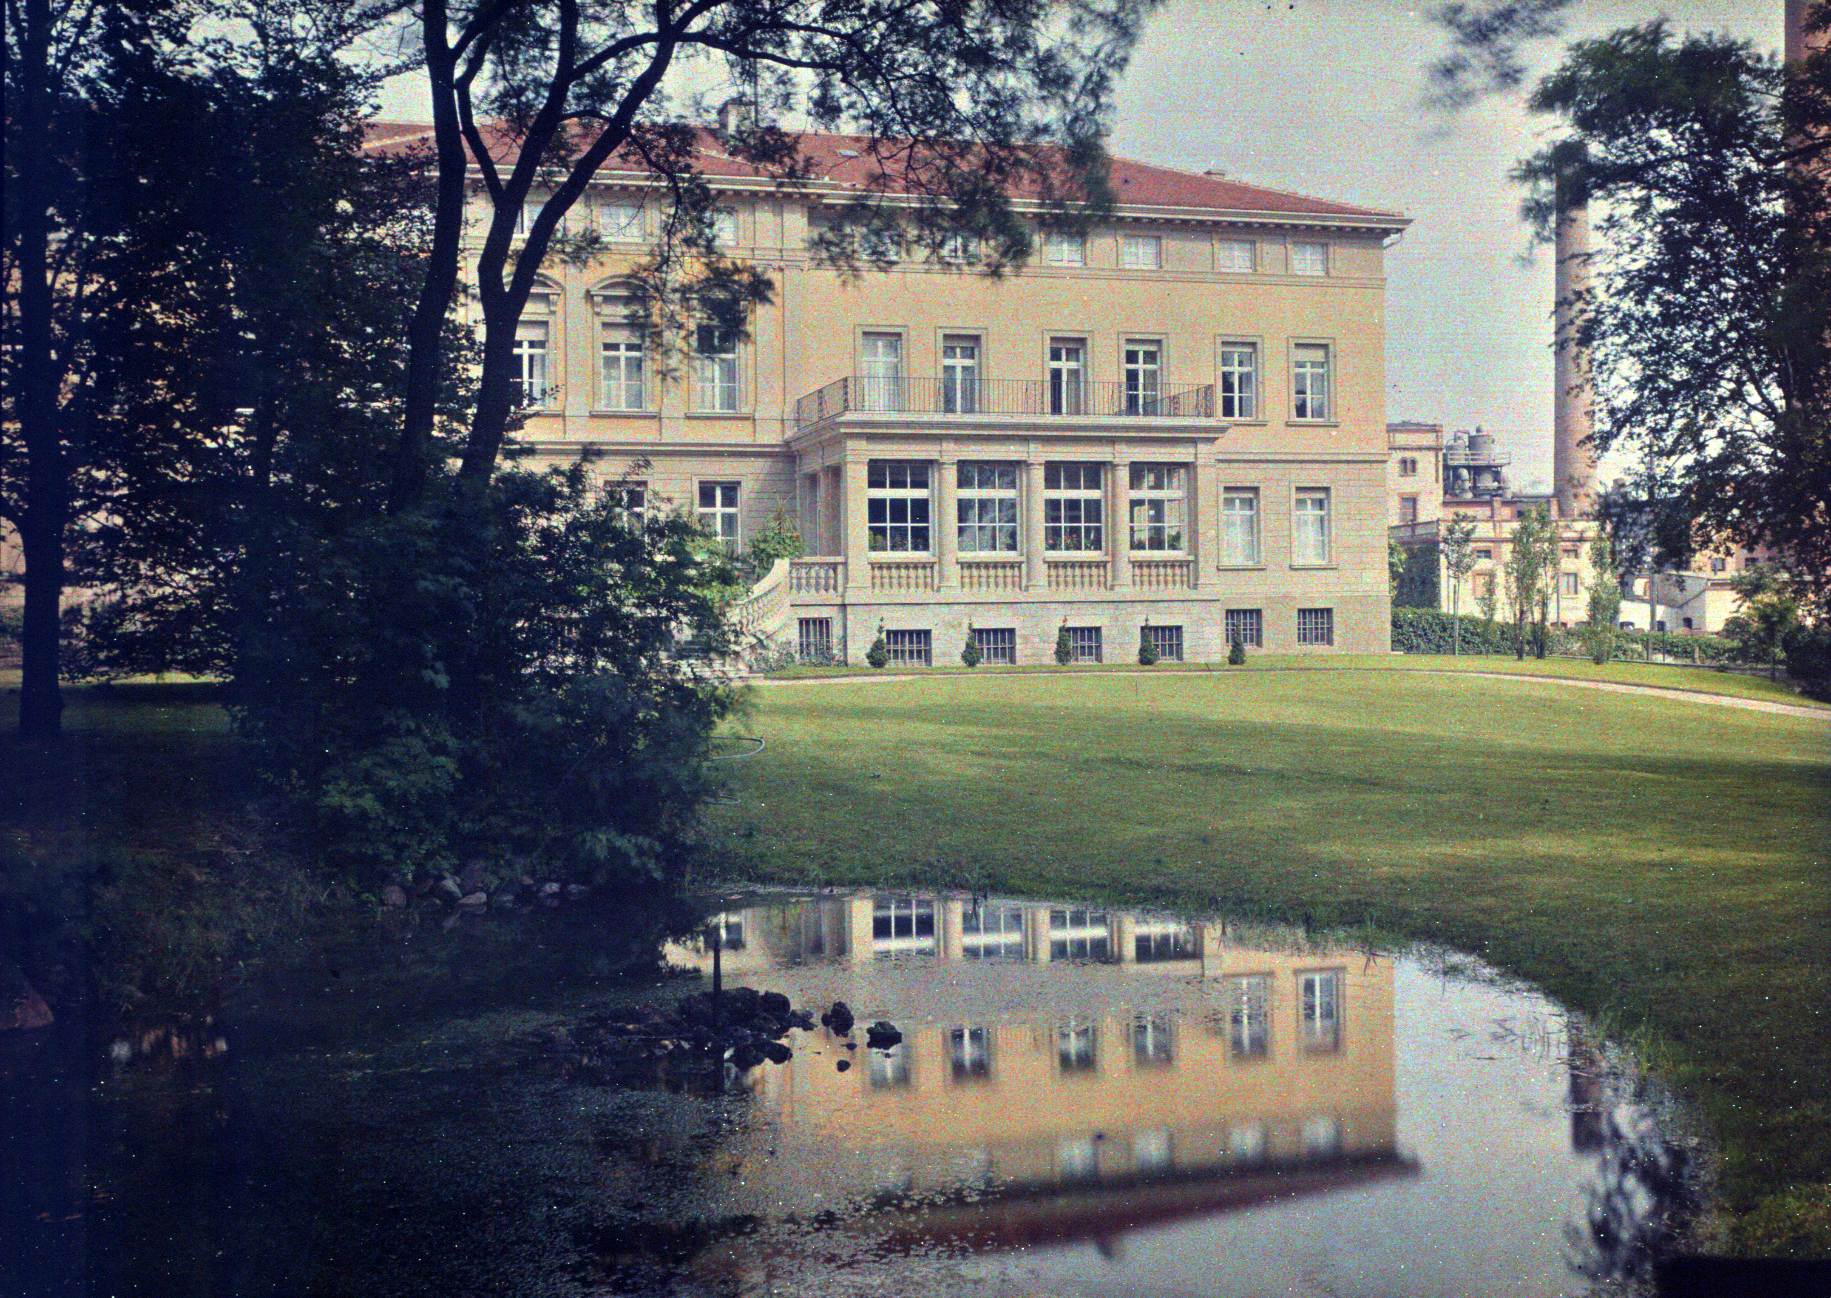 Villa Giesecke 建于 1869 年，具有 Klein Wanzleben 的古典主义风格